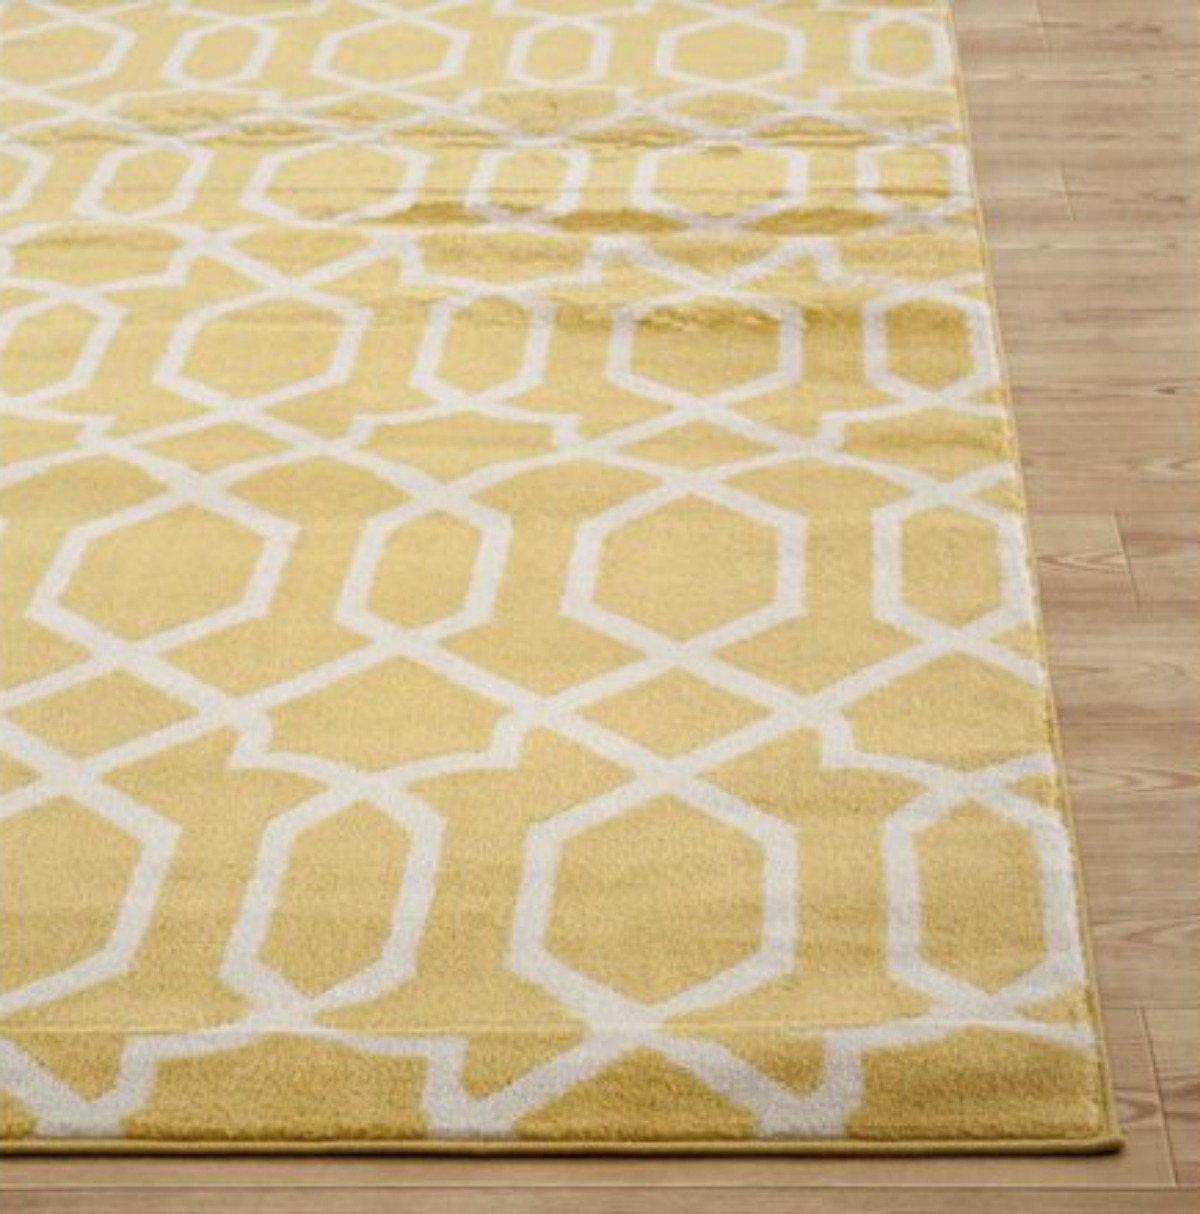 yellow rug with white trellis design